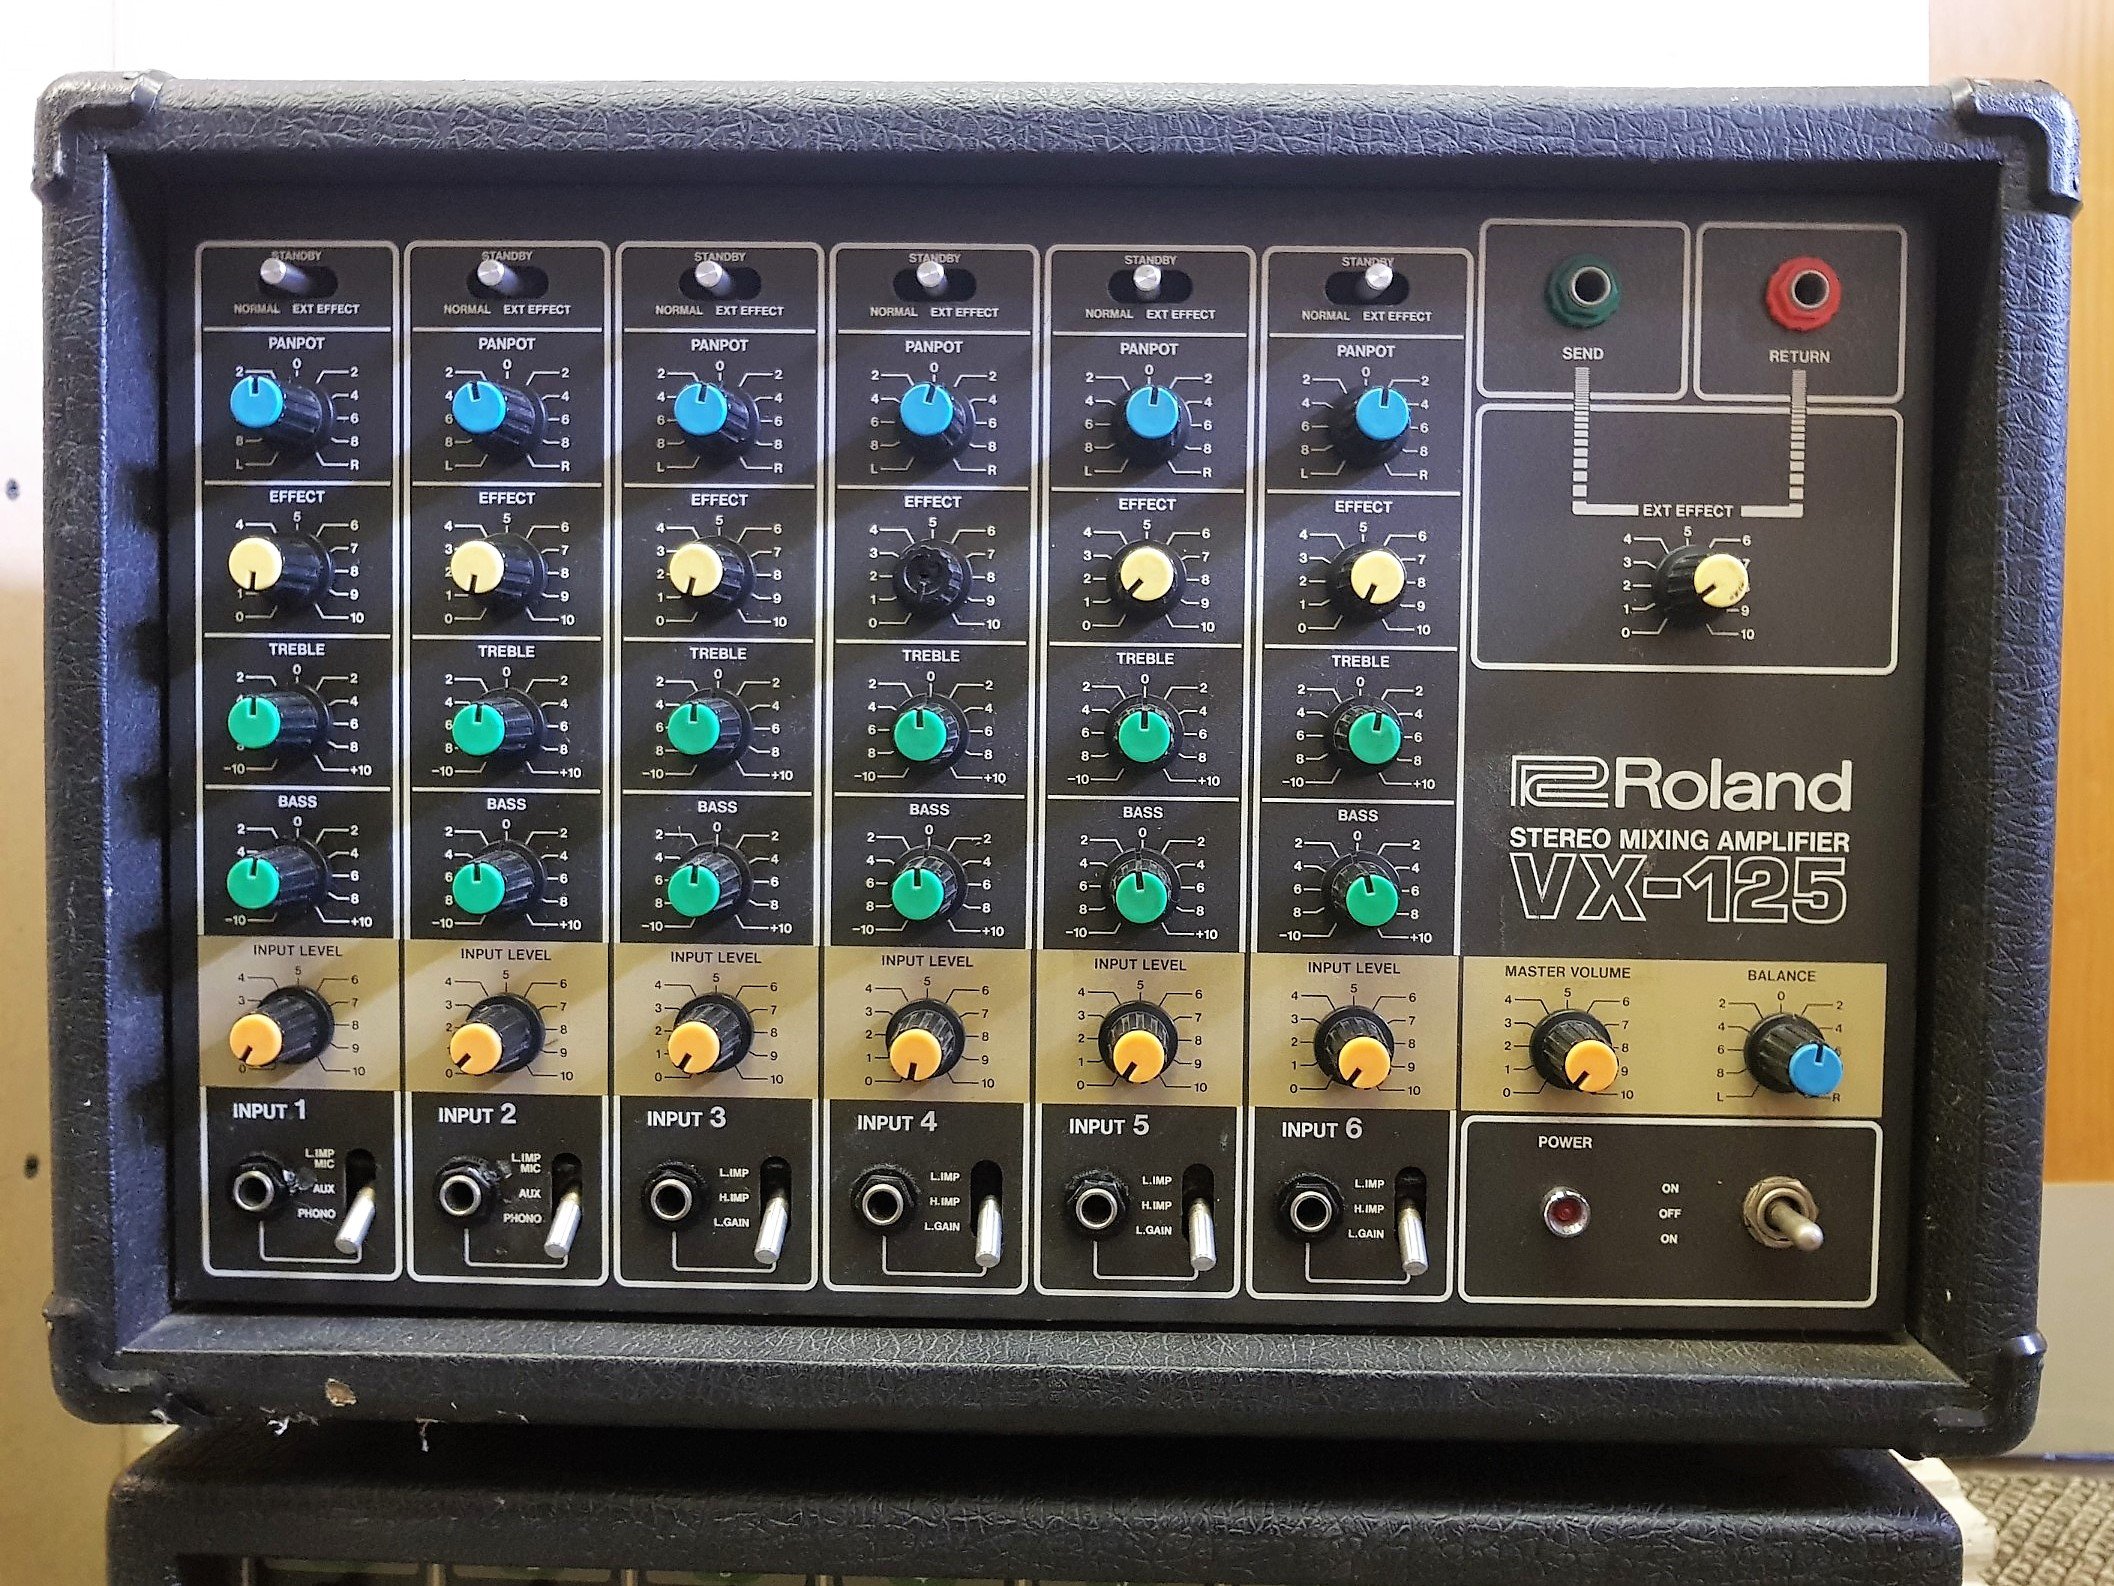 Roland VX-125 Stereo Mixer